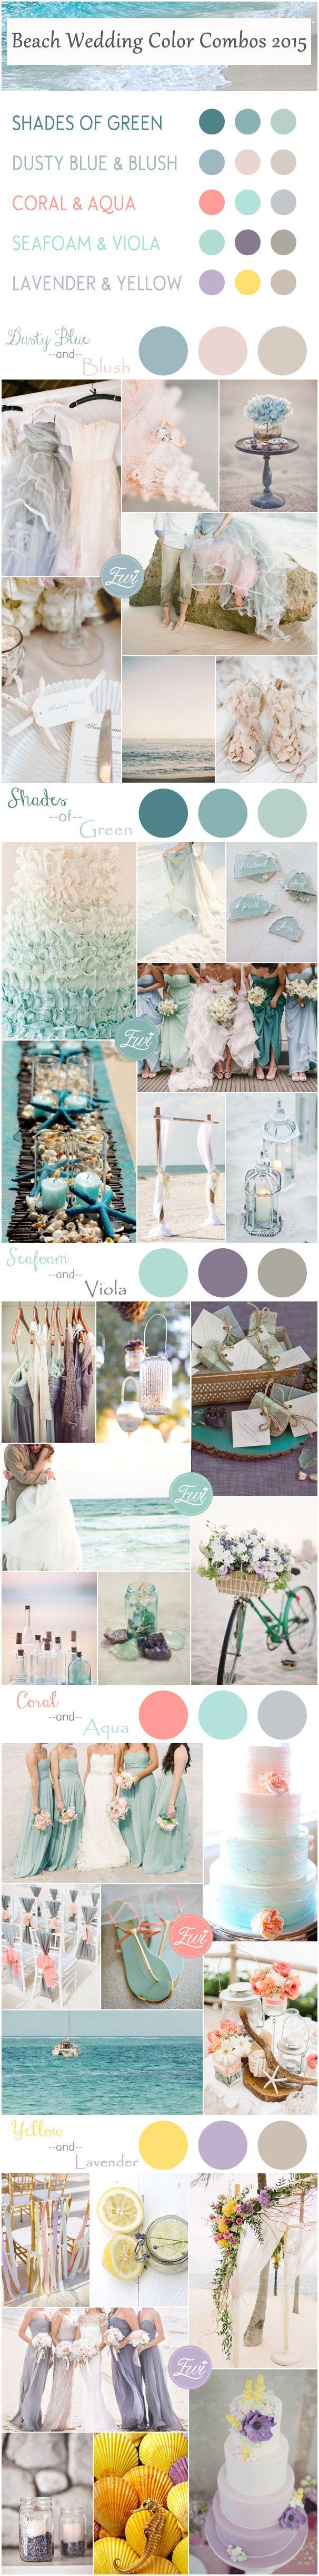 Wedding - Top 5 Beach Wedding Color Ideas For Summer 2015